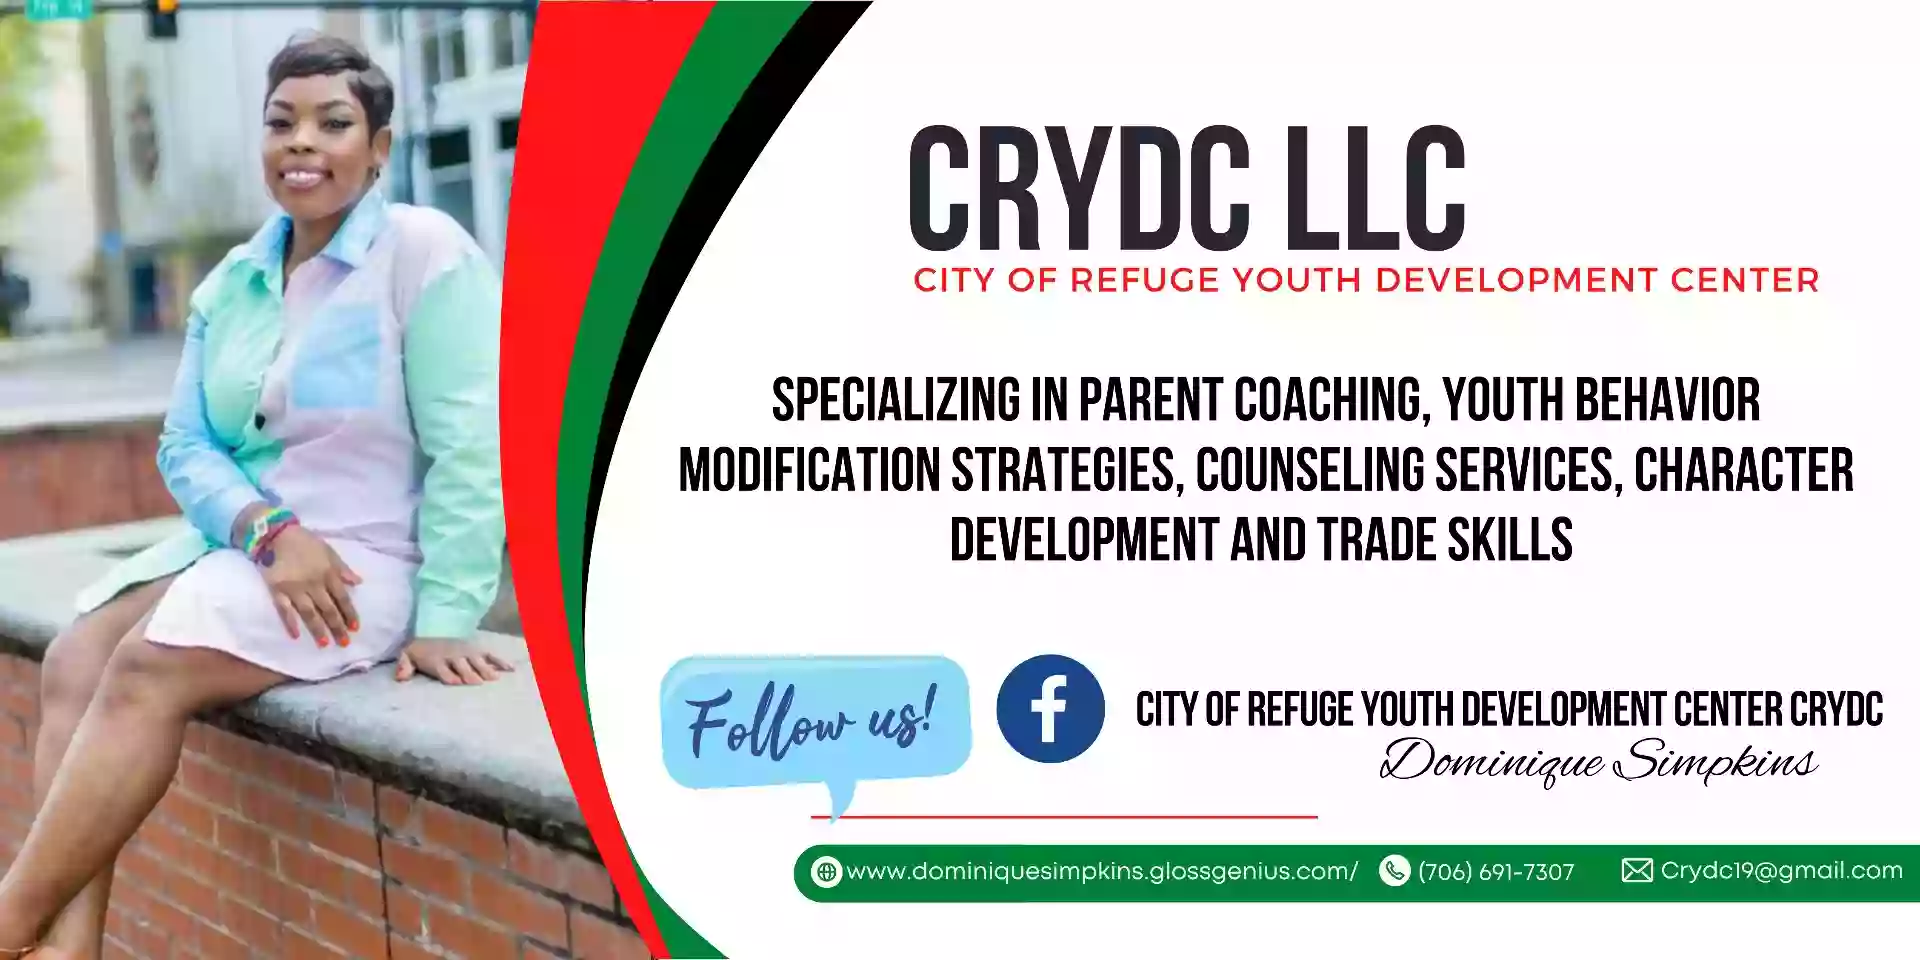 CRYDC LLC